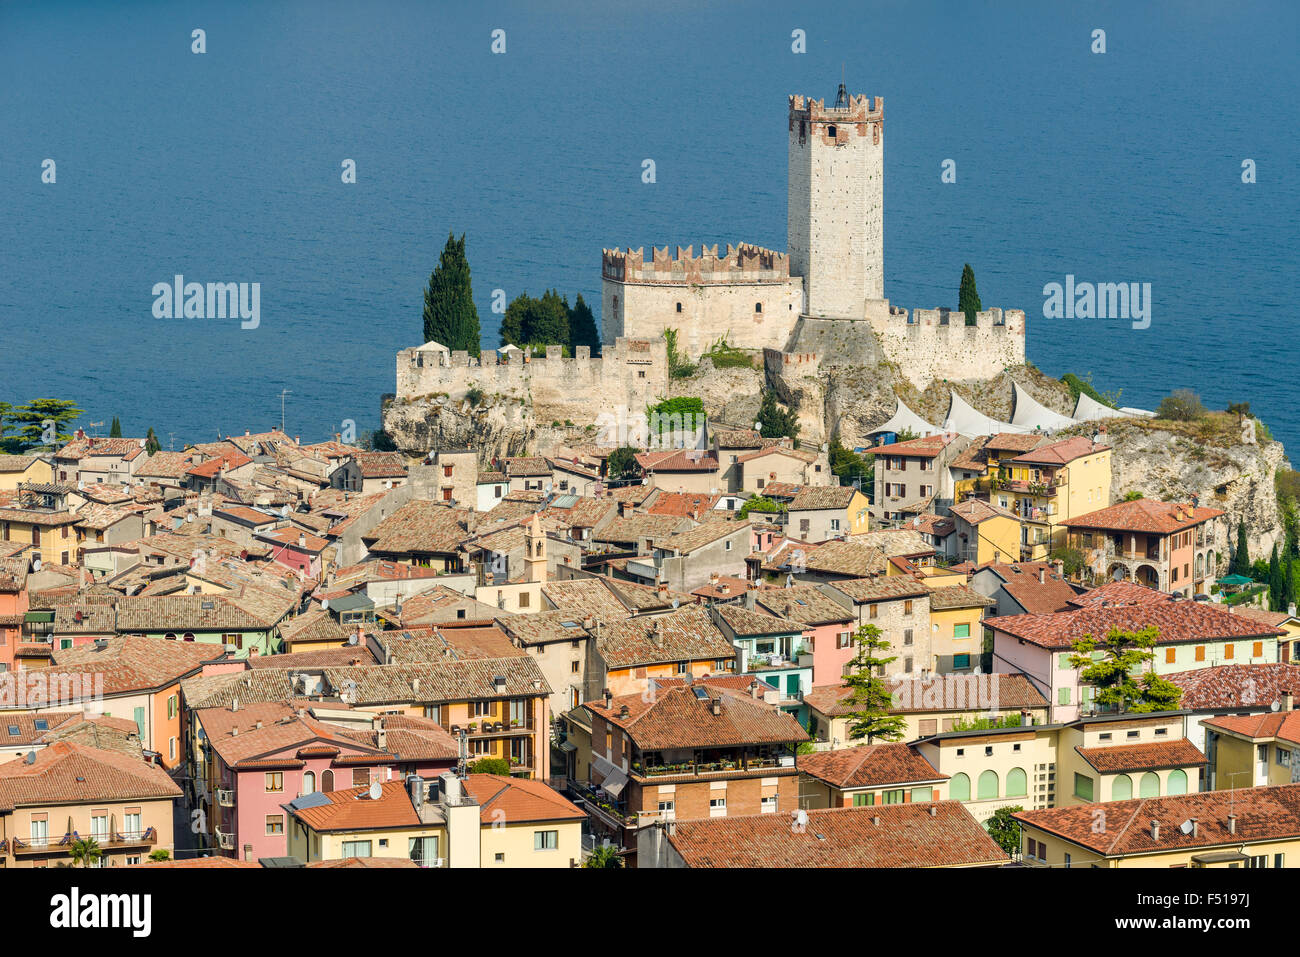 Luftbild der Altstadt, am Ufer des Gardasees Stockfoto